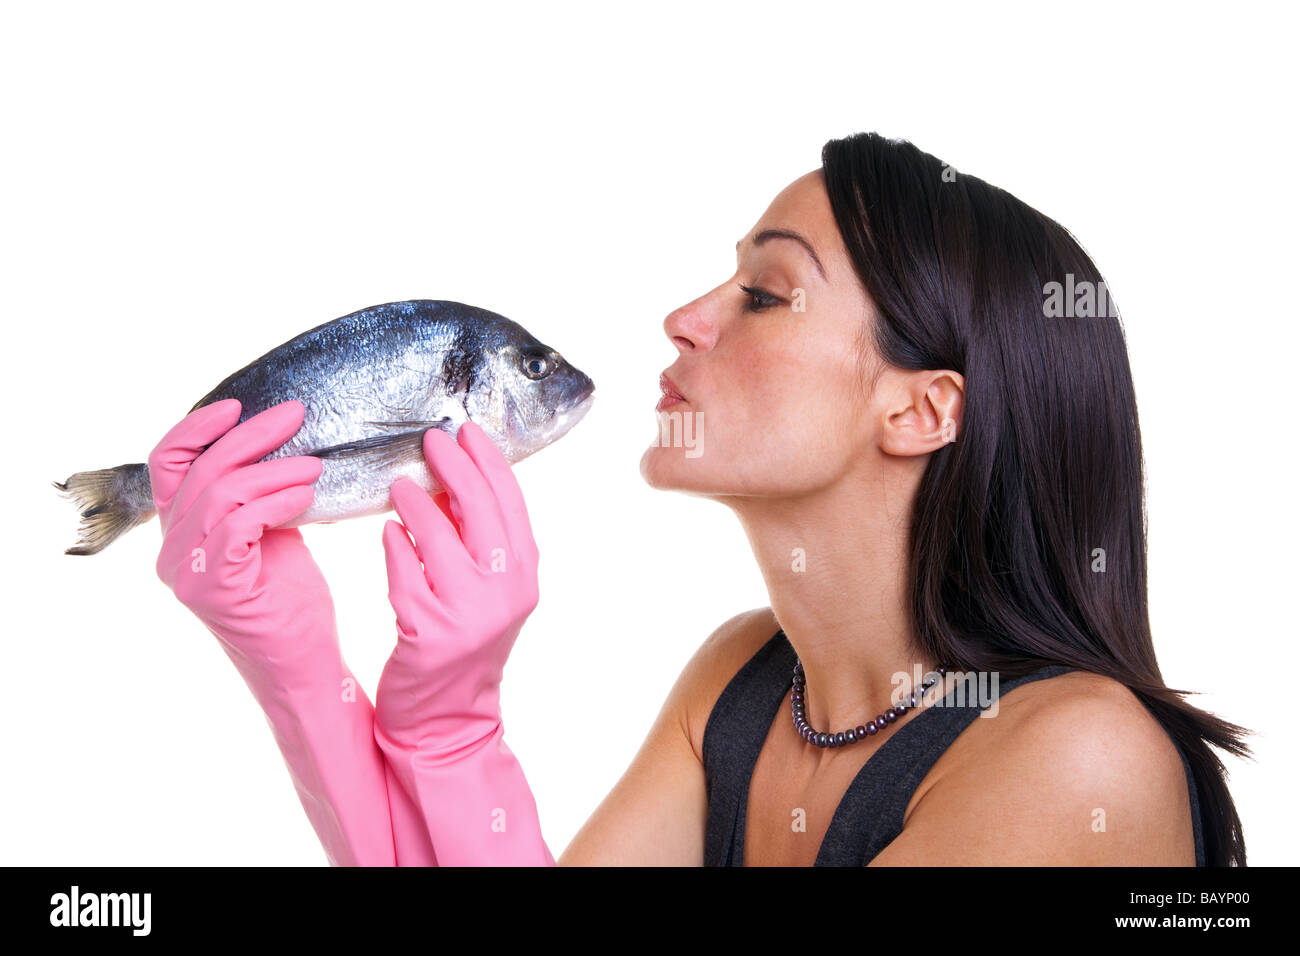 La donna in rosa di guanti di gomma attorno a baciare un pesce isolato su sfondo bianco Foto Stock